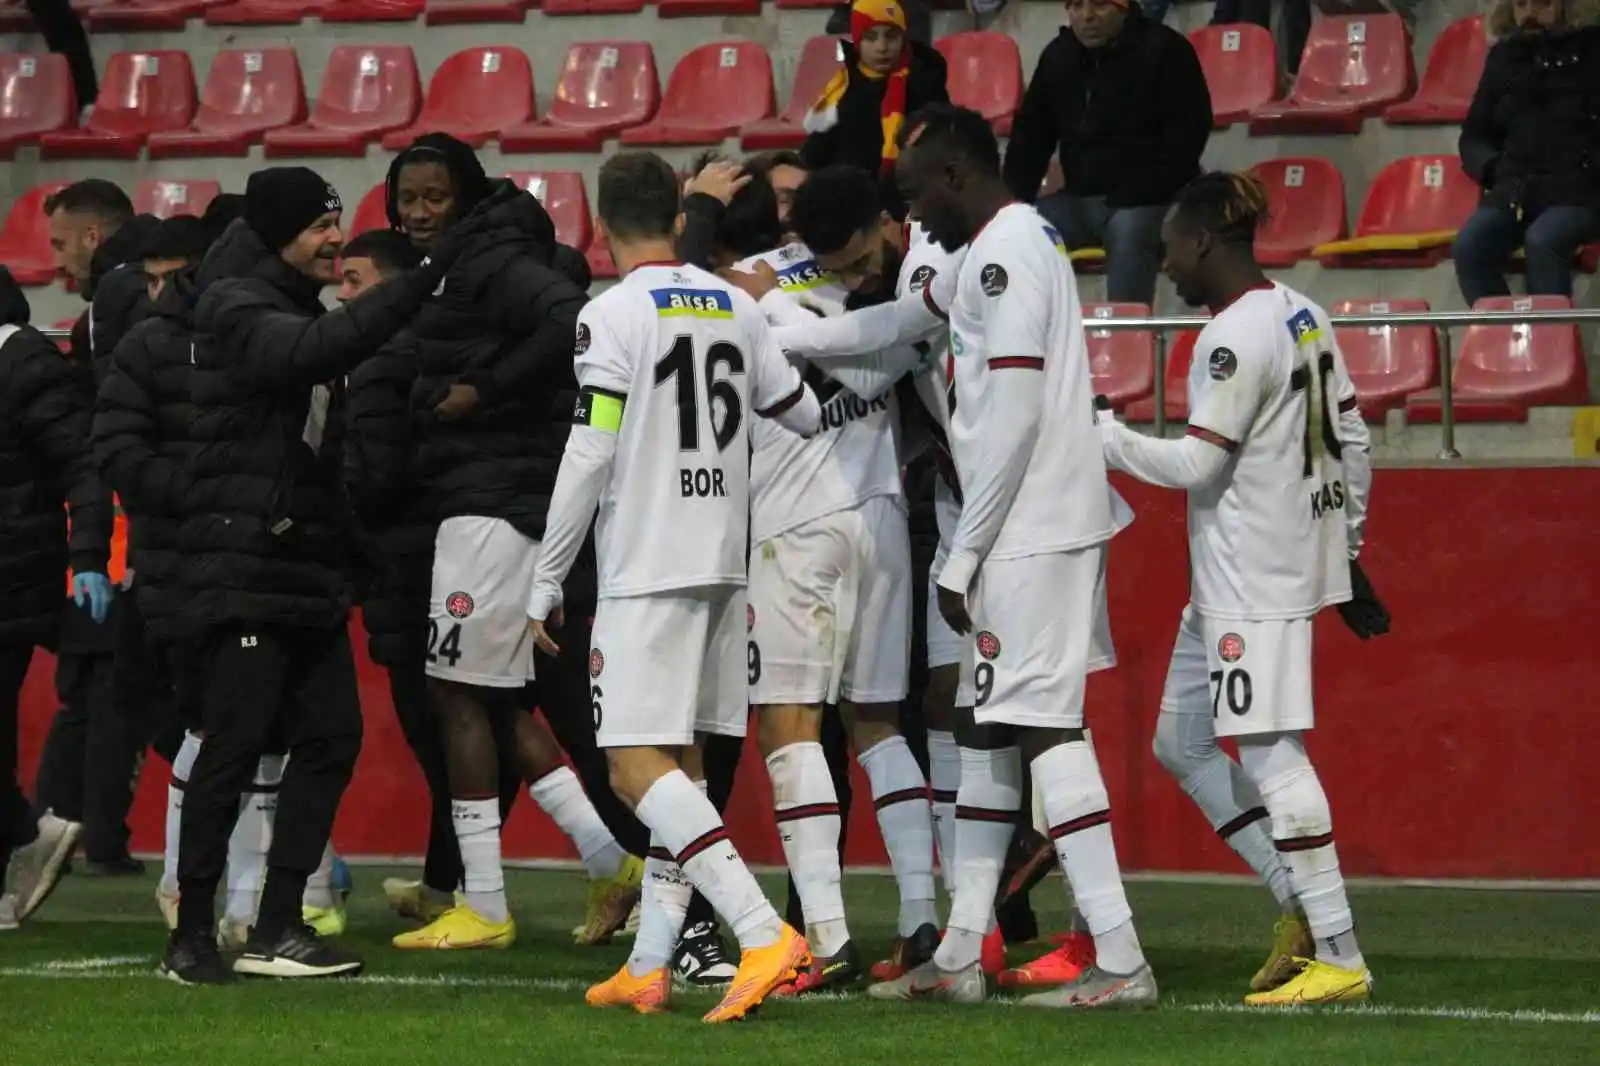 Spor Toto Süper Lig: Kayserispor: 2 - Fatih Karagümrük: 4 (Maç sonucu)
